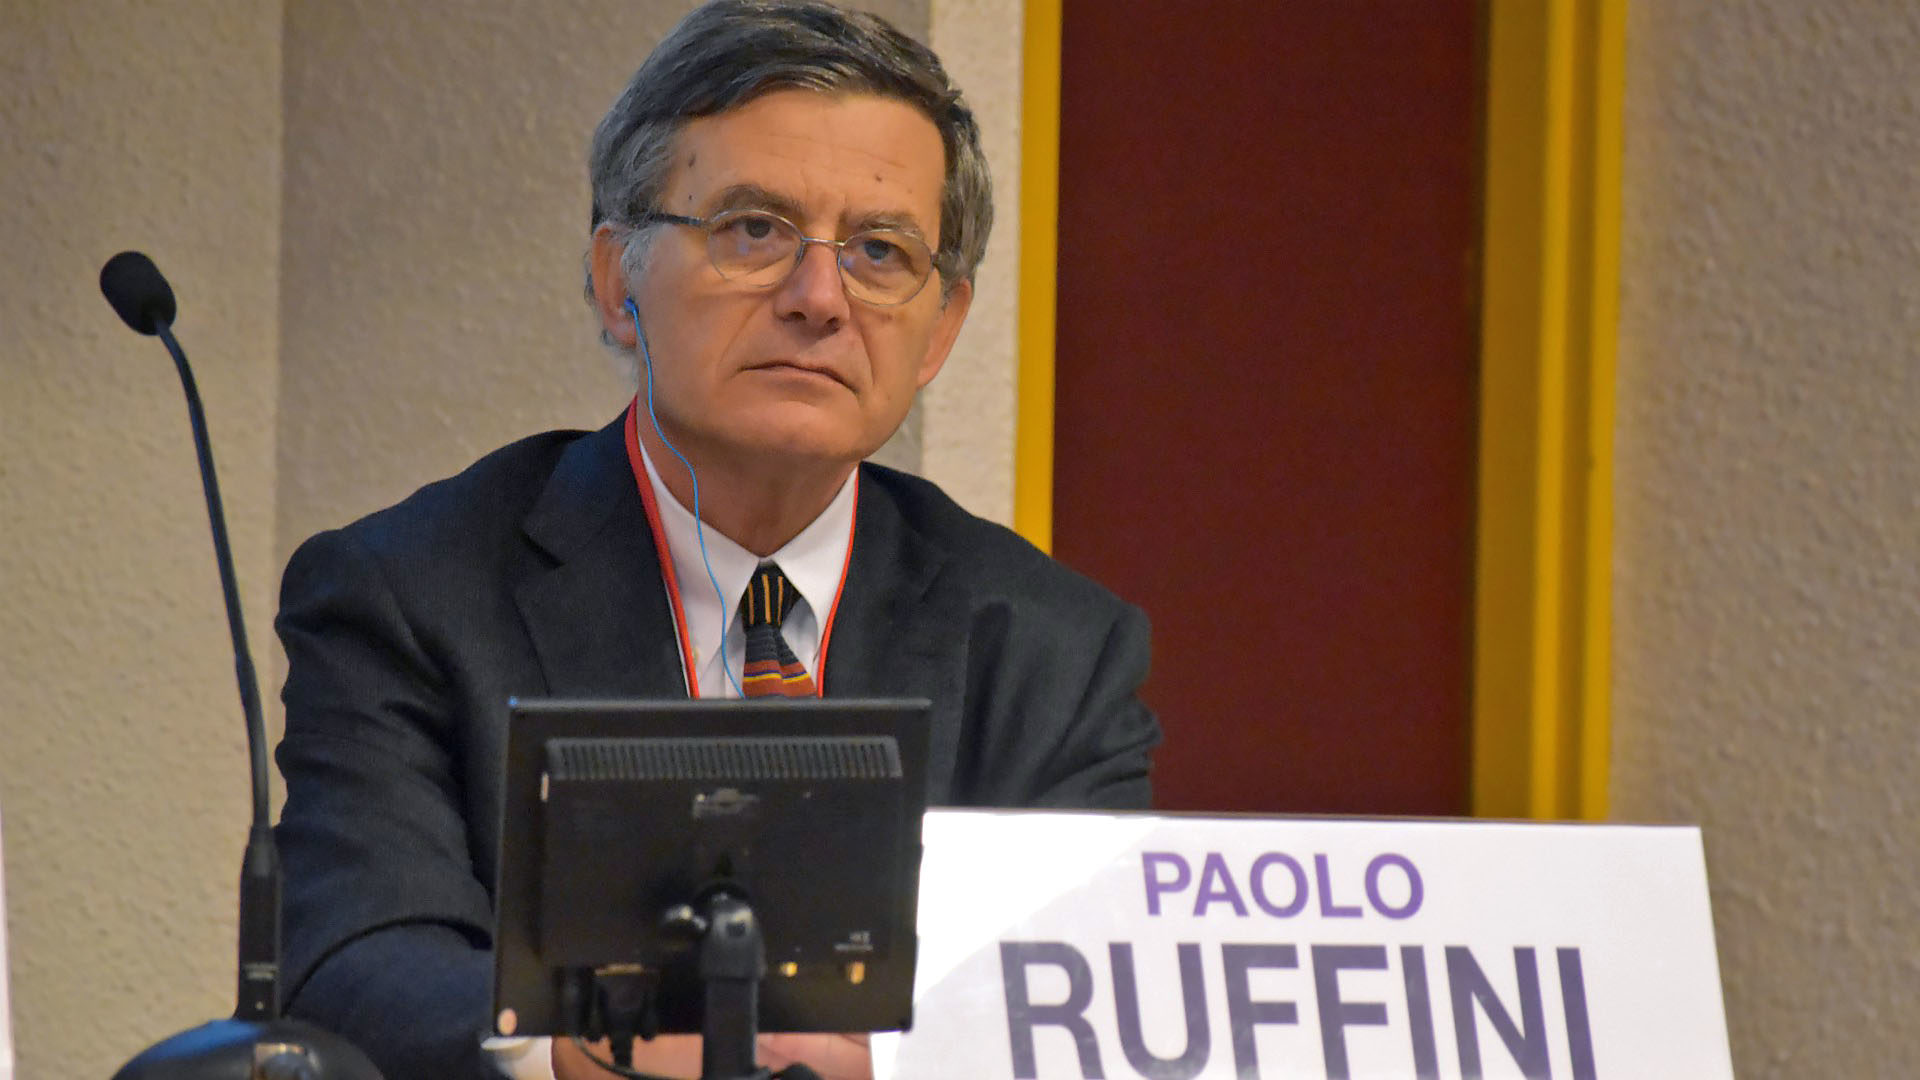 Paolo Ruffini, préfet du Dicastère pour la Communication du Vatican, orateur invité au séminaire de la CPA | © Jacques Berset